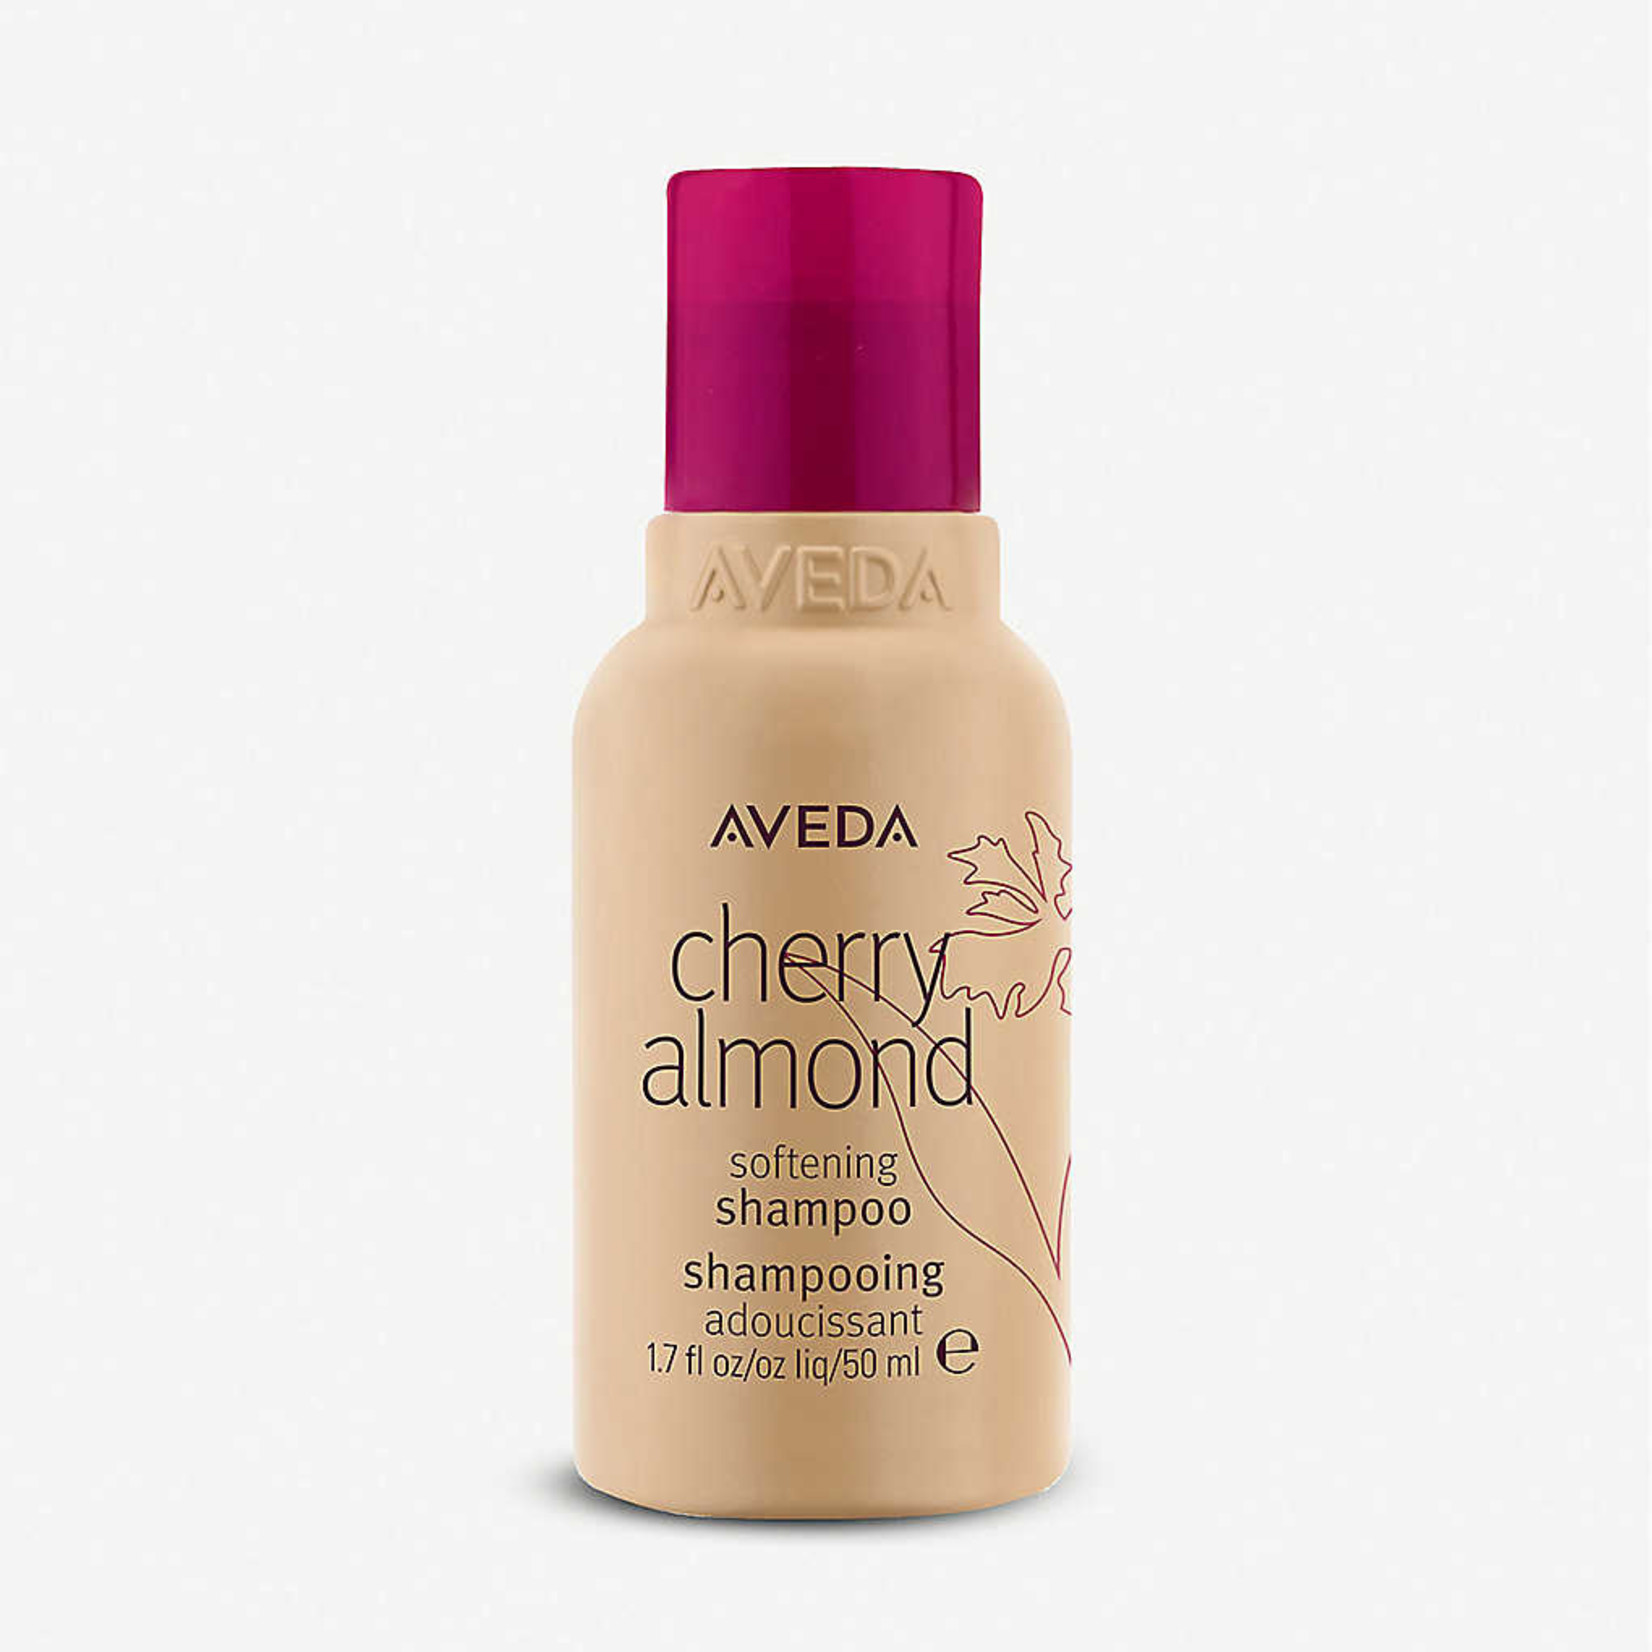 AVEDA Cherry Almond Softening Shampoo